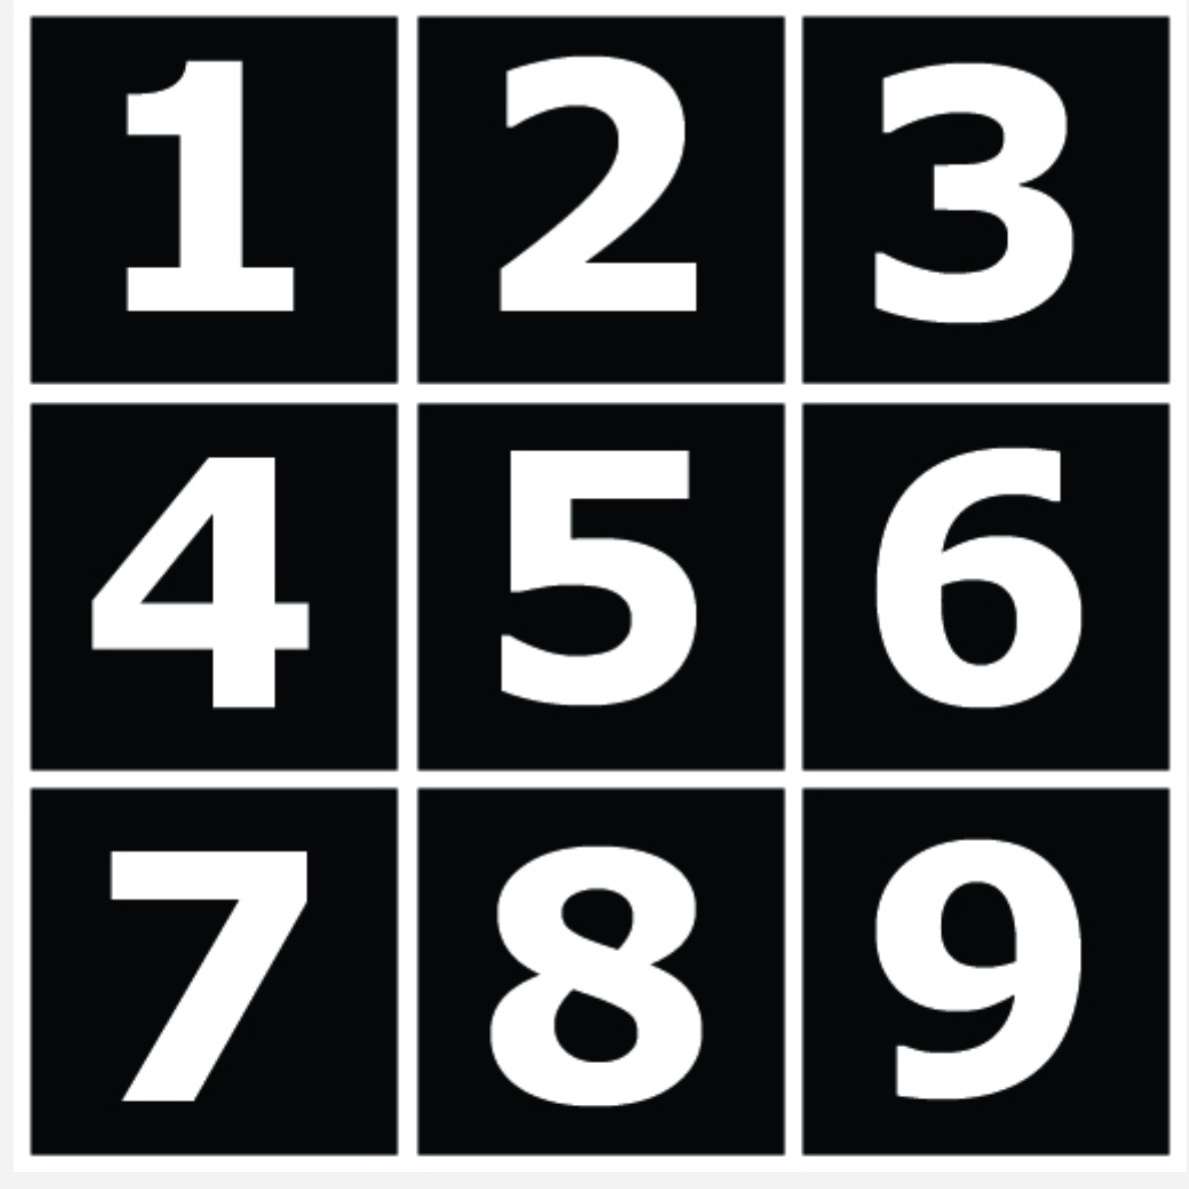 3x3 puzzle online puzzle